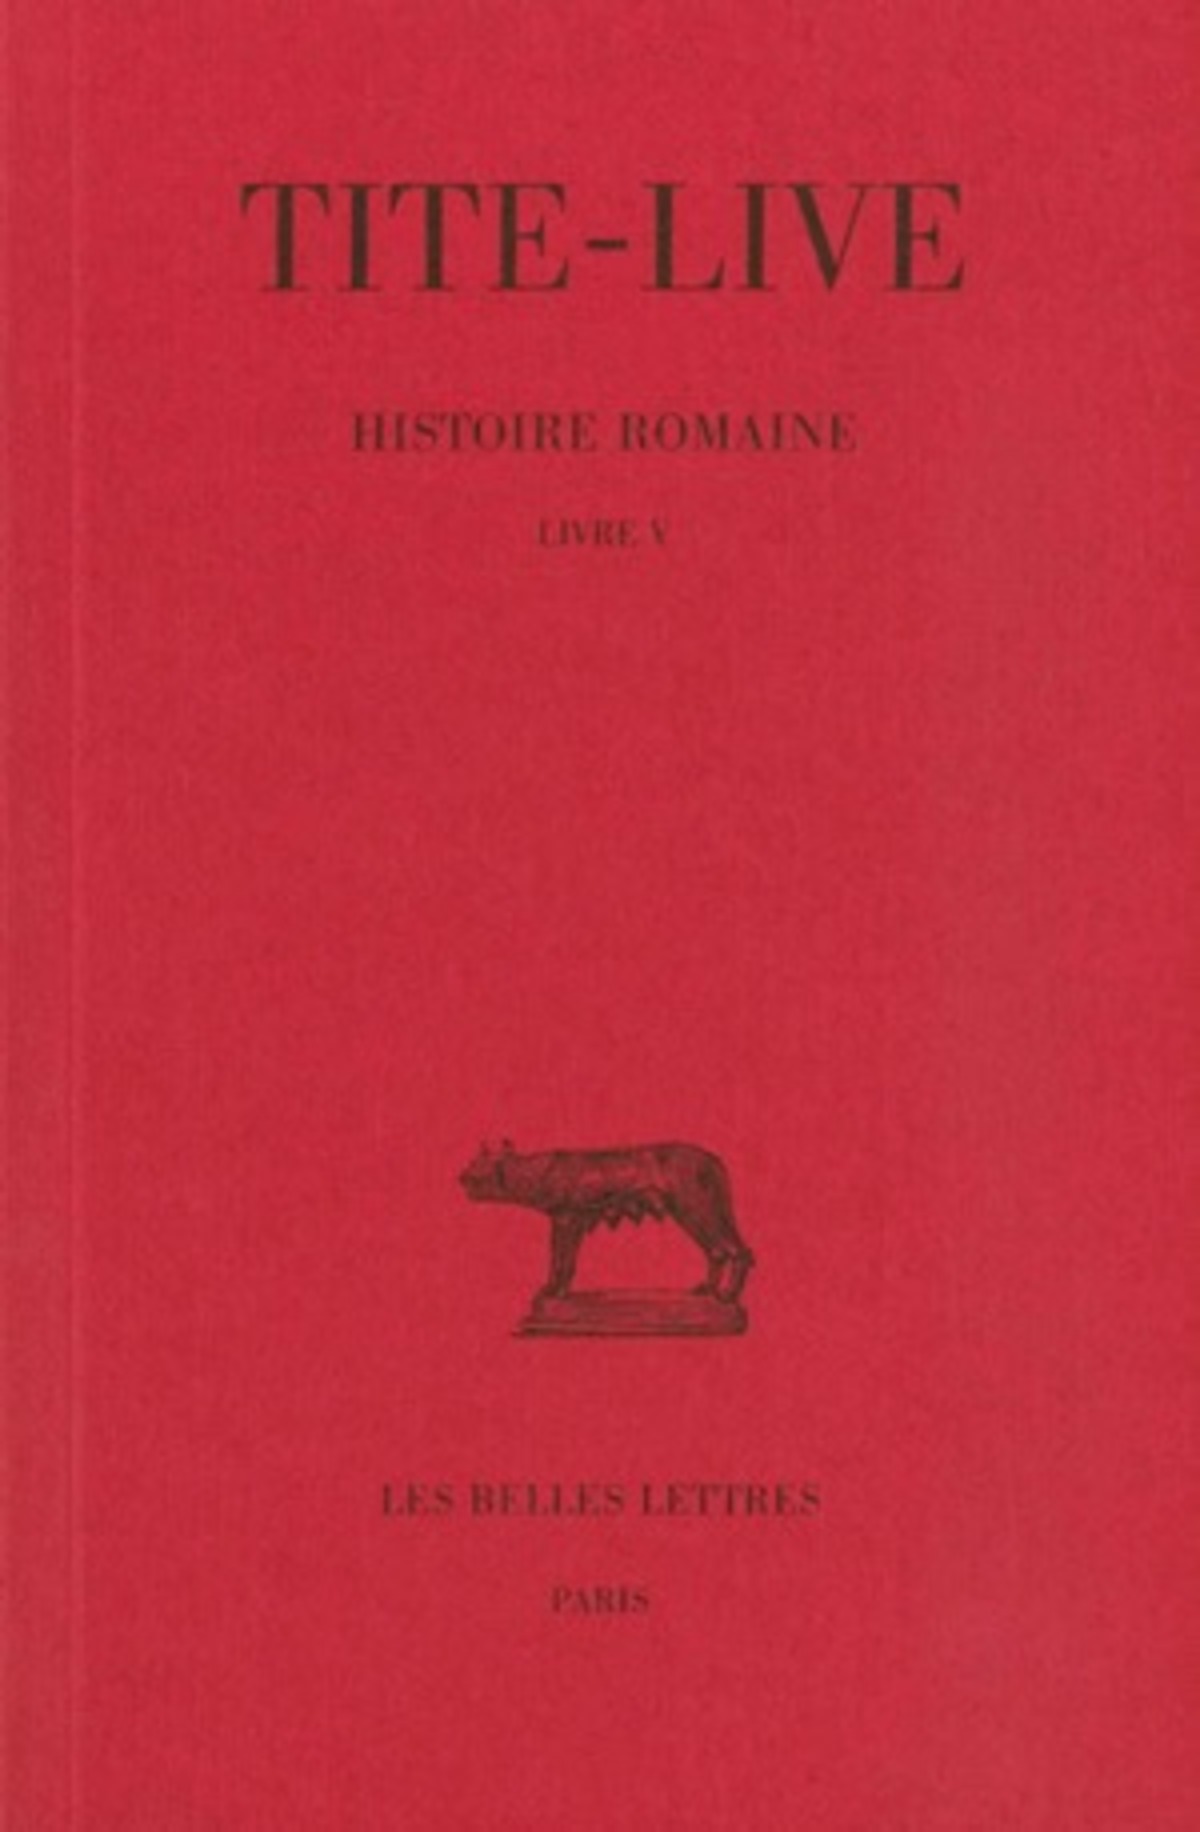 Histoire romaine. Tome V : Livre V